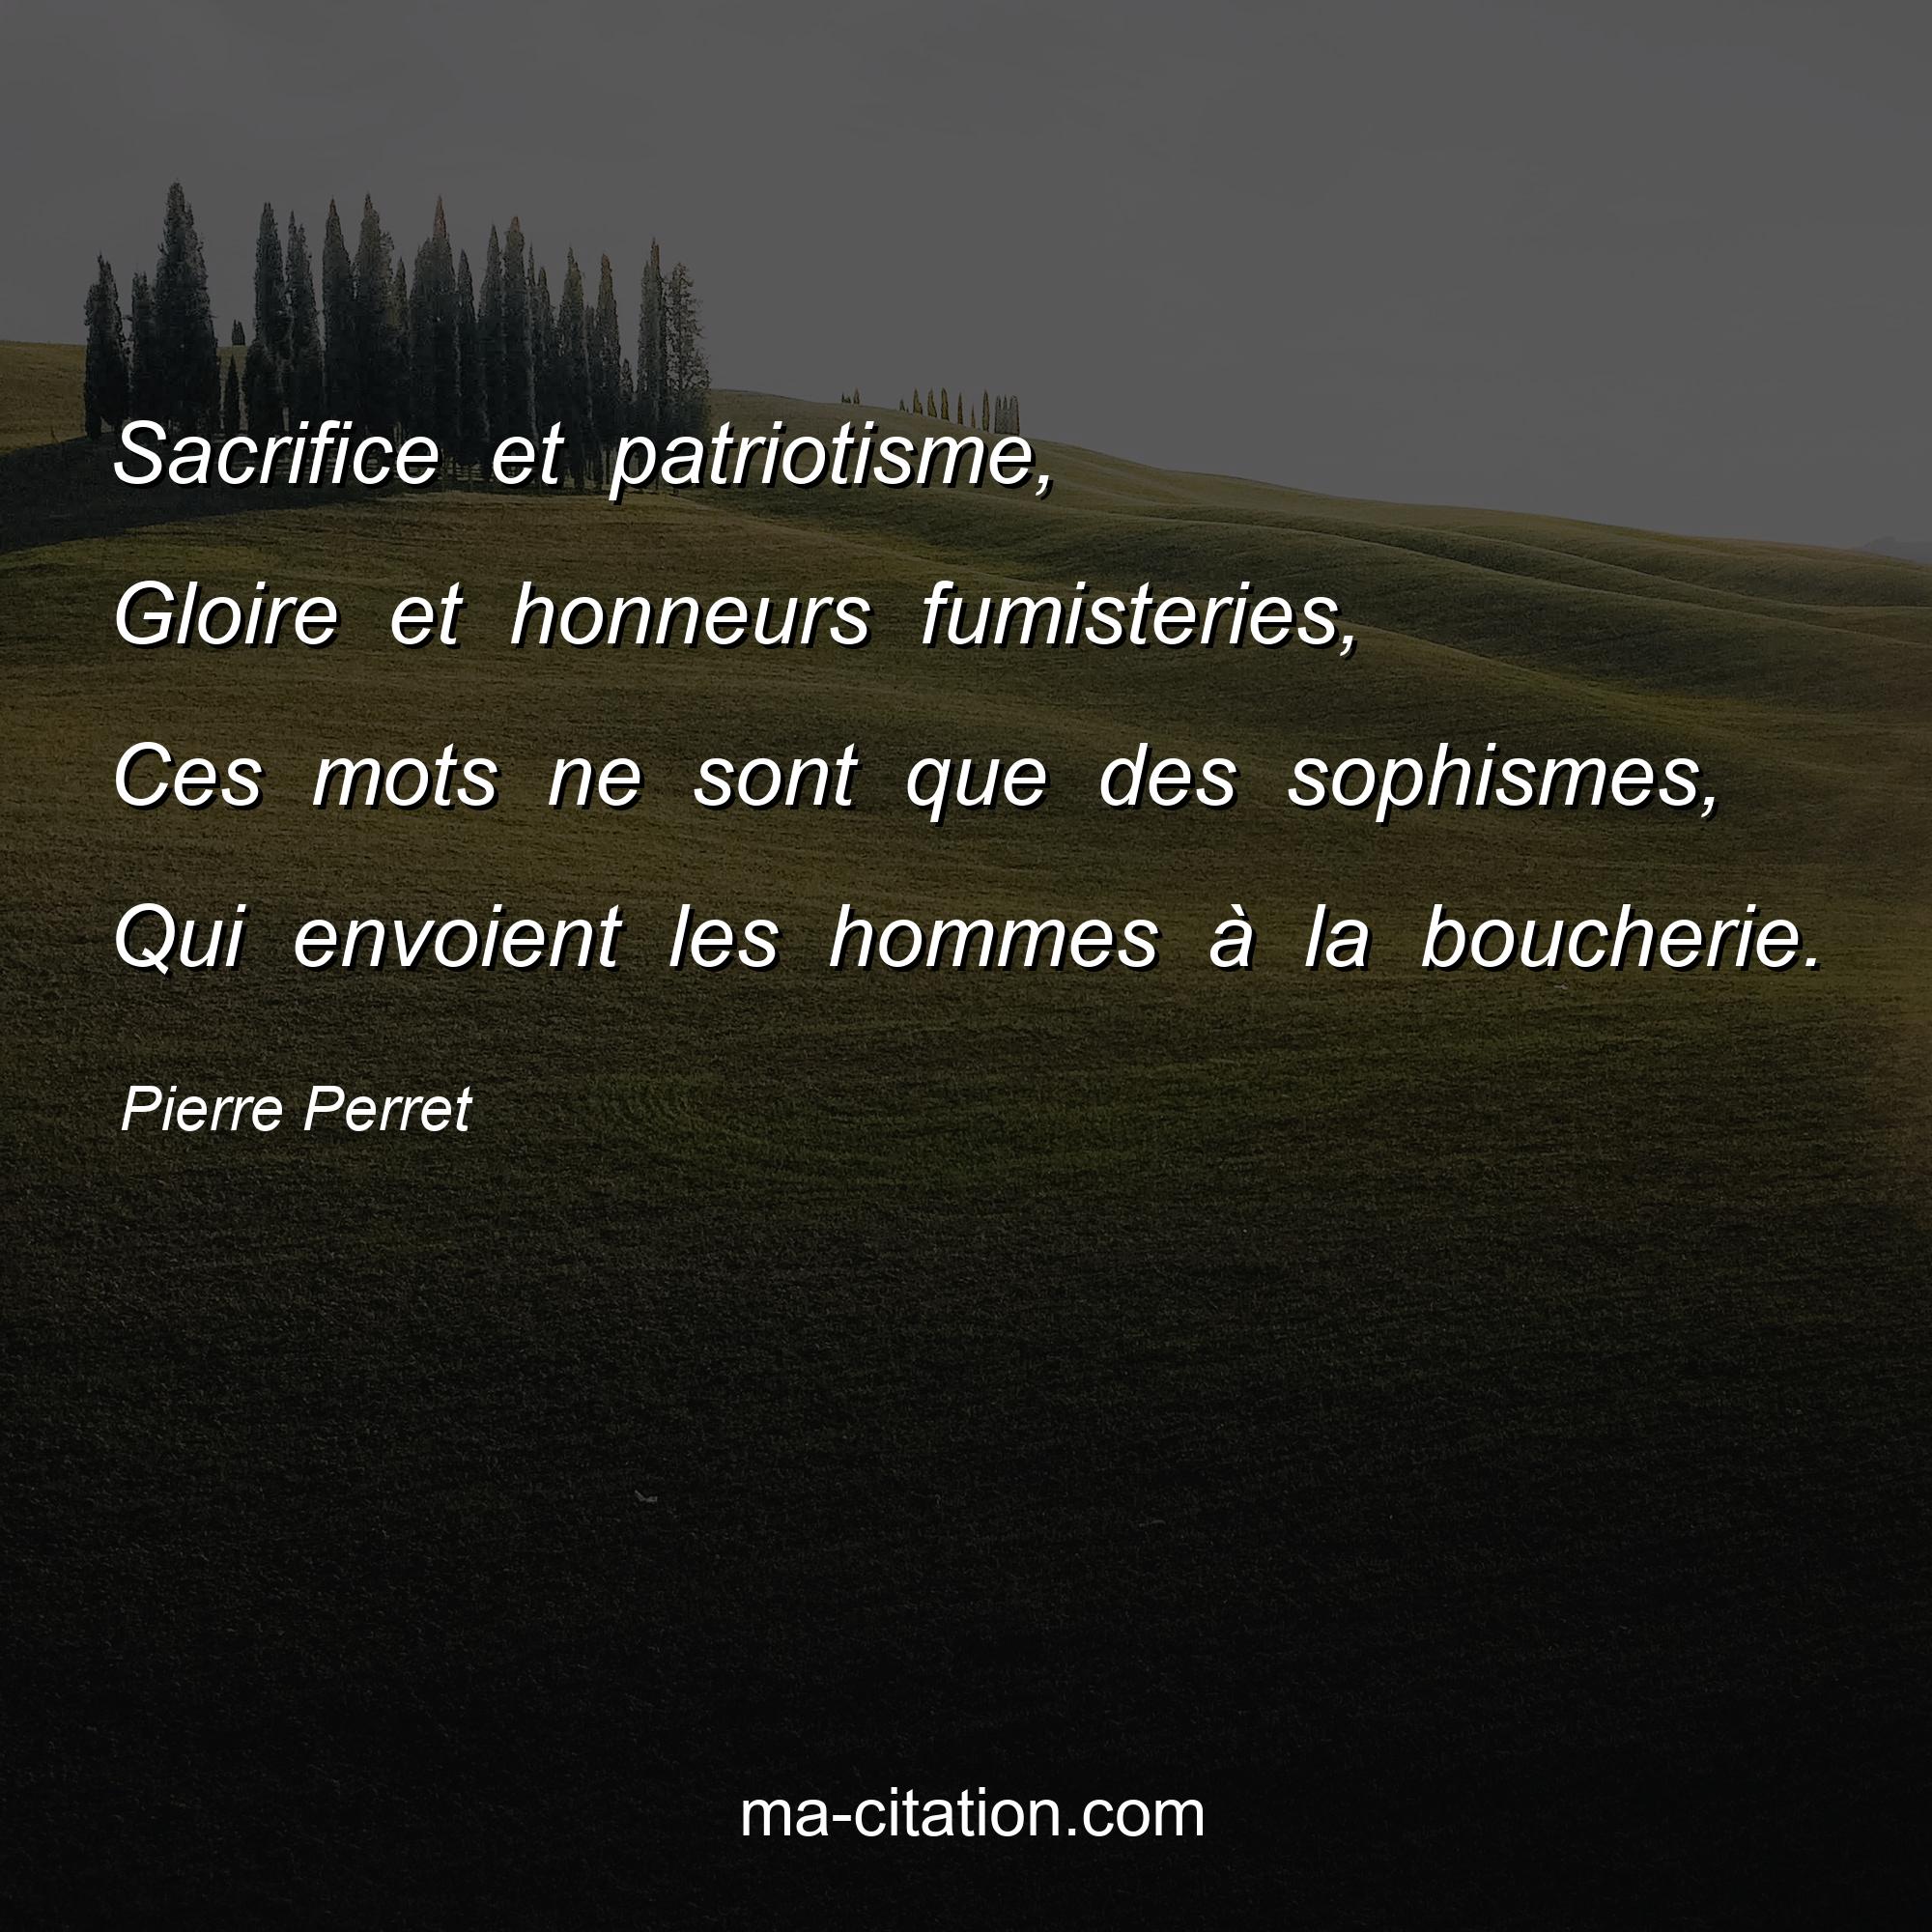 Pierre Perret : Sacrifice et patriotisme, Gloire et honneurs fumisteries, Ces mots ne sont que des sophismes, Qui envoient les hommes à la boucherie.